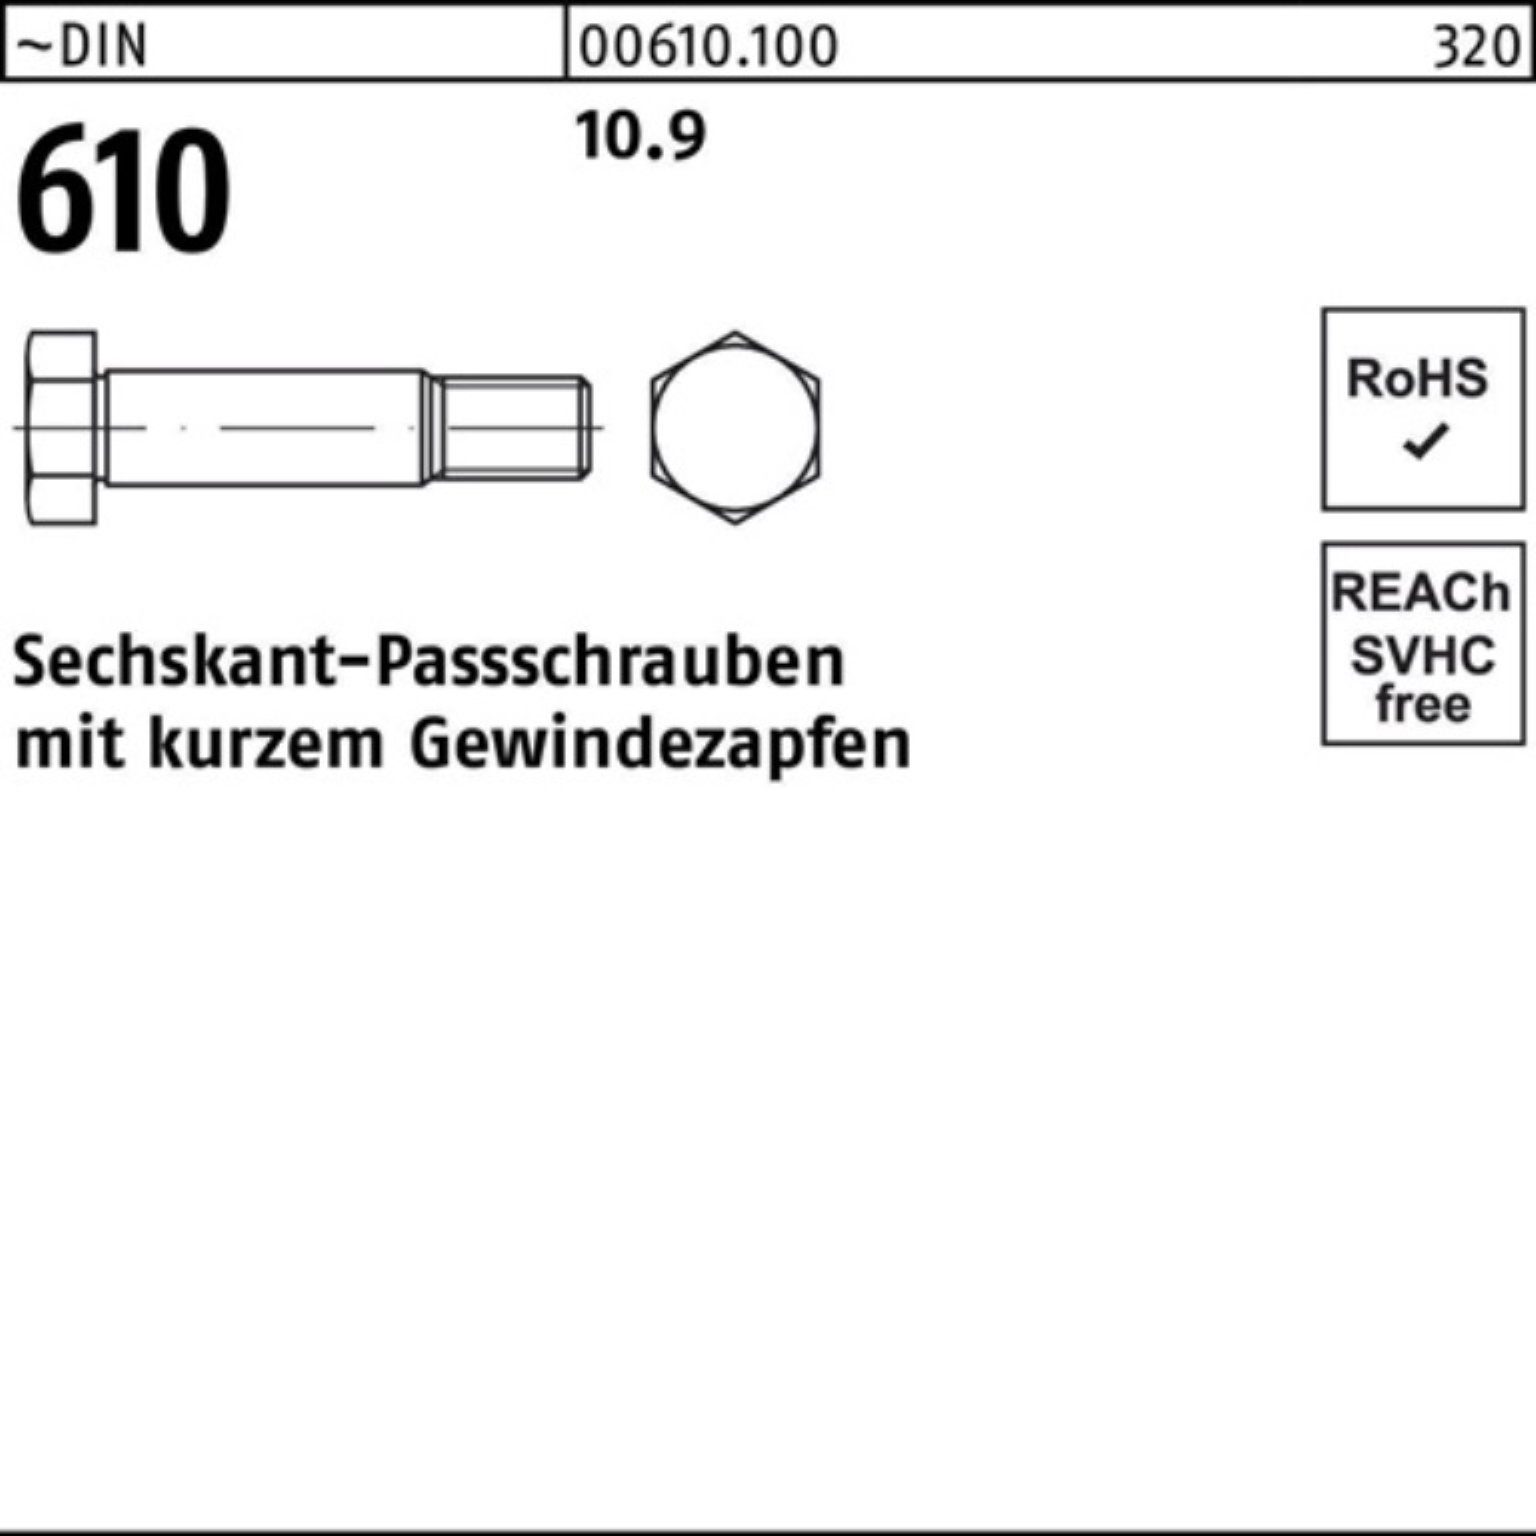 Reyher Schraube kurzem 110 610 100er DIN Pack Sechskantpassschraube Gewindezapfen M16x